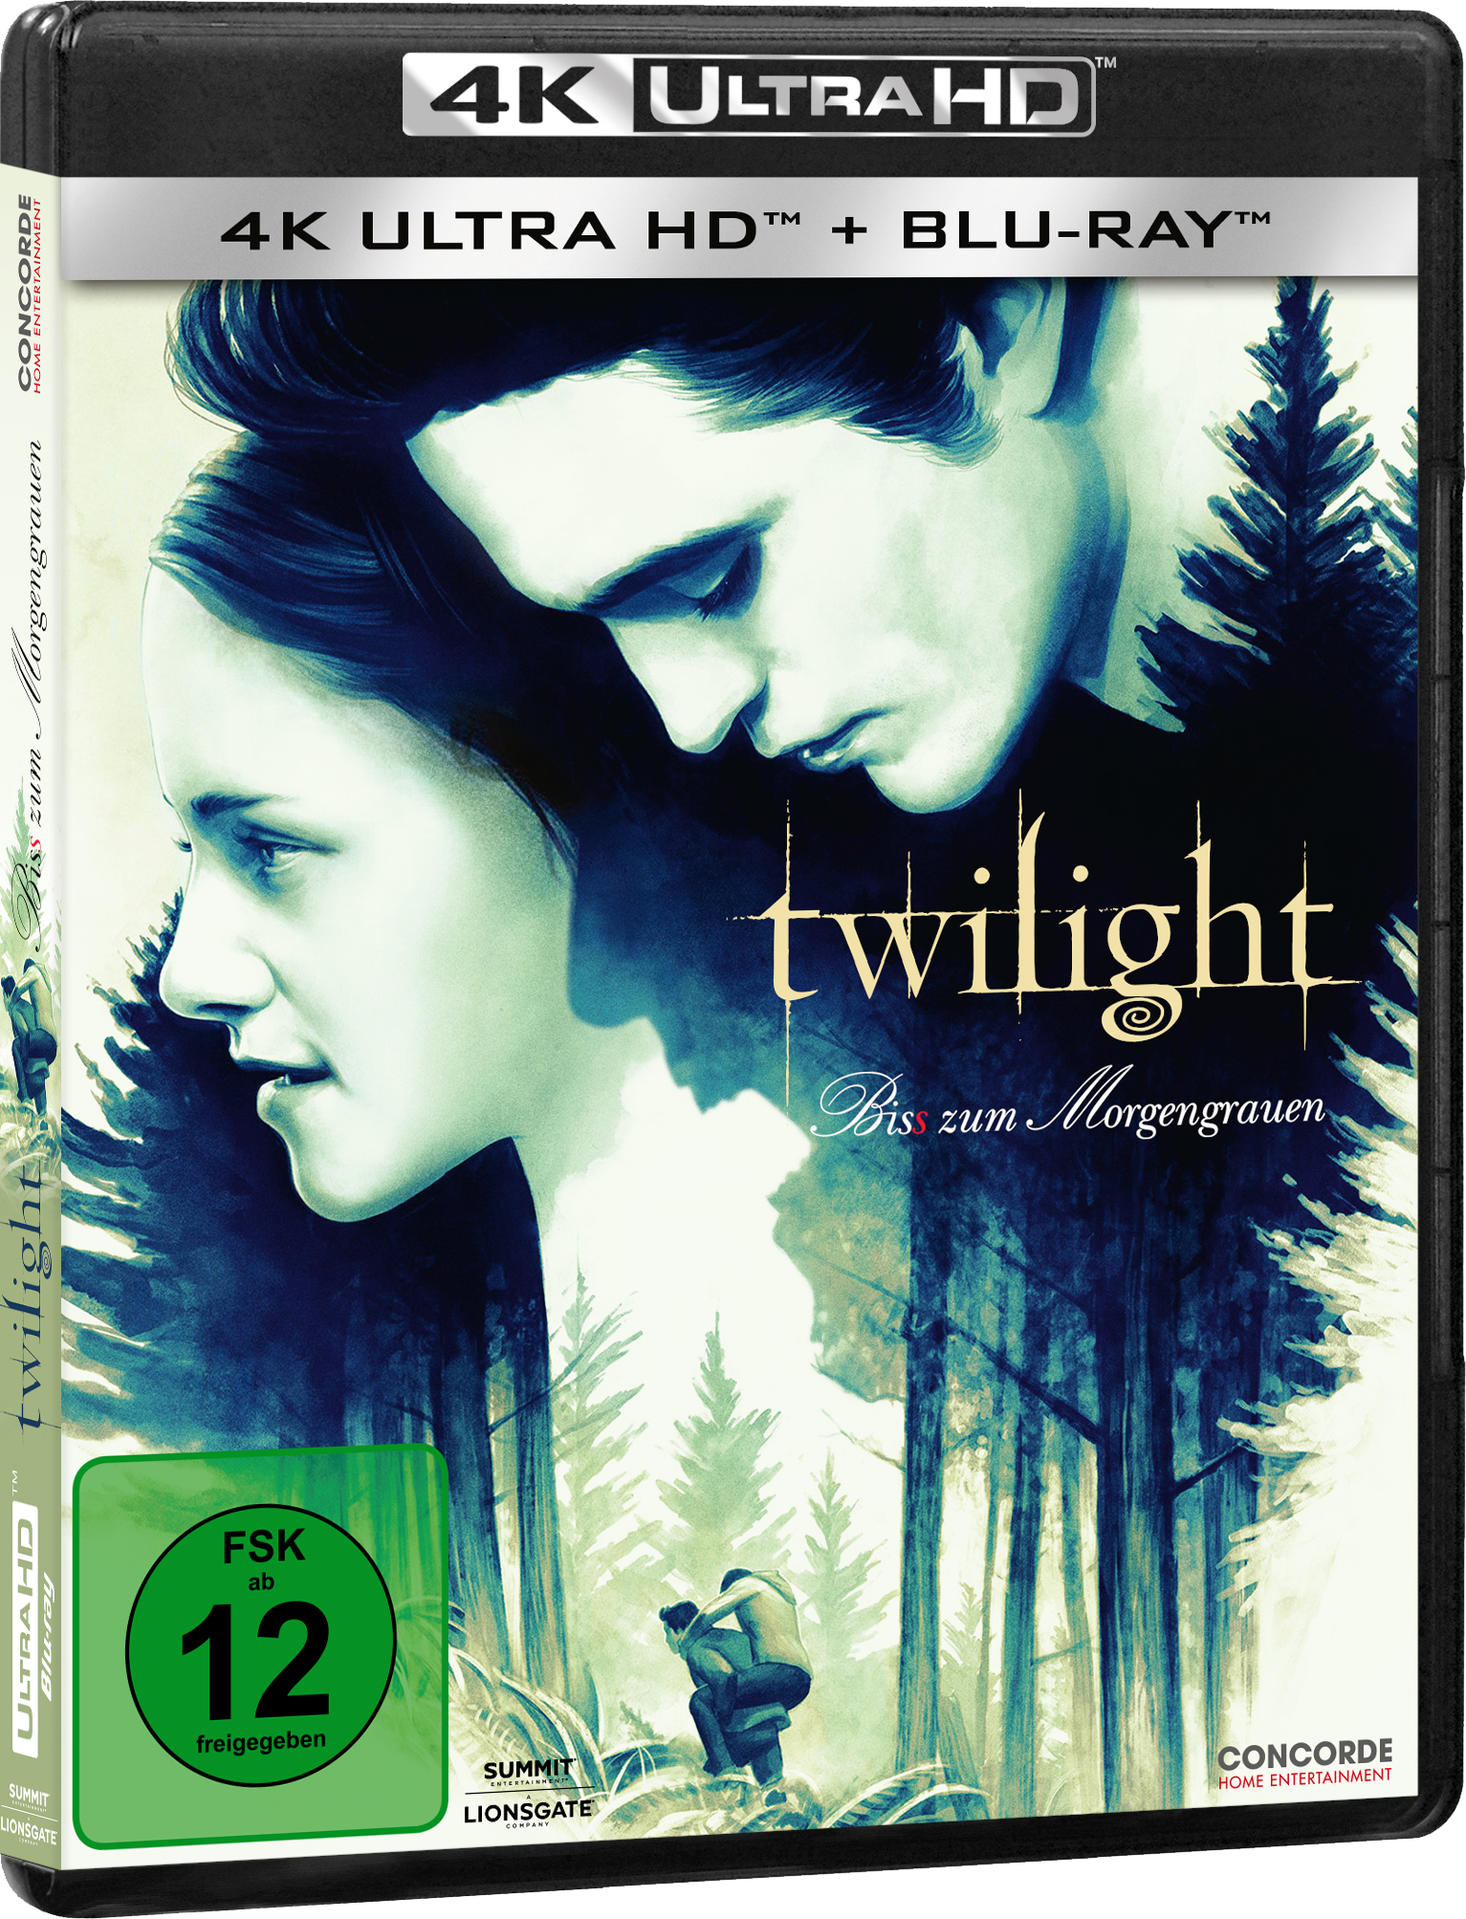 Biss + HD Ultra 4K Blu-ray Blu-ray - zum Morgengrauen Twilight